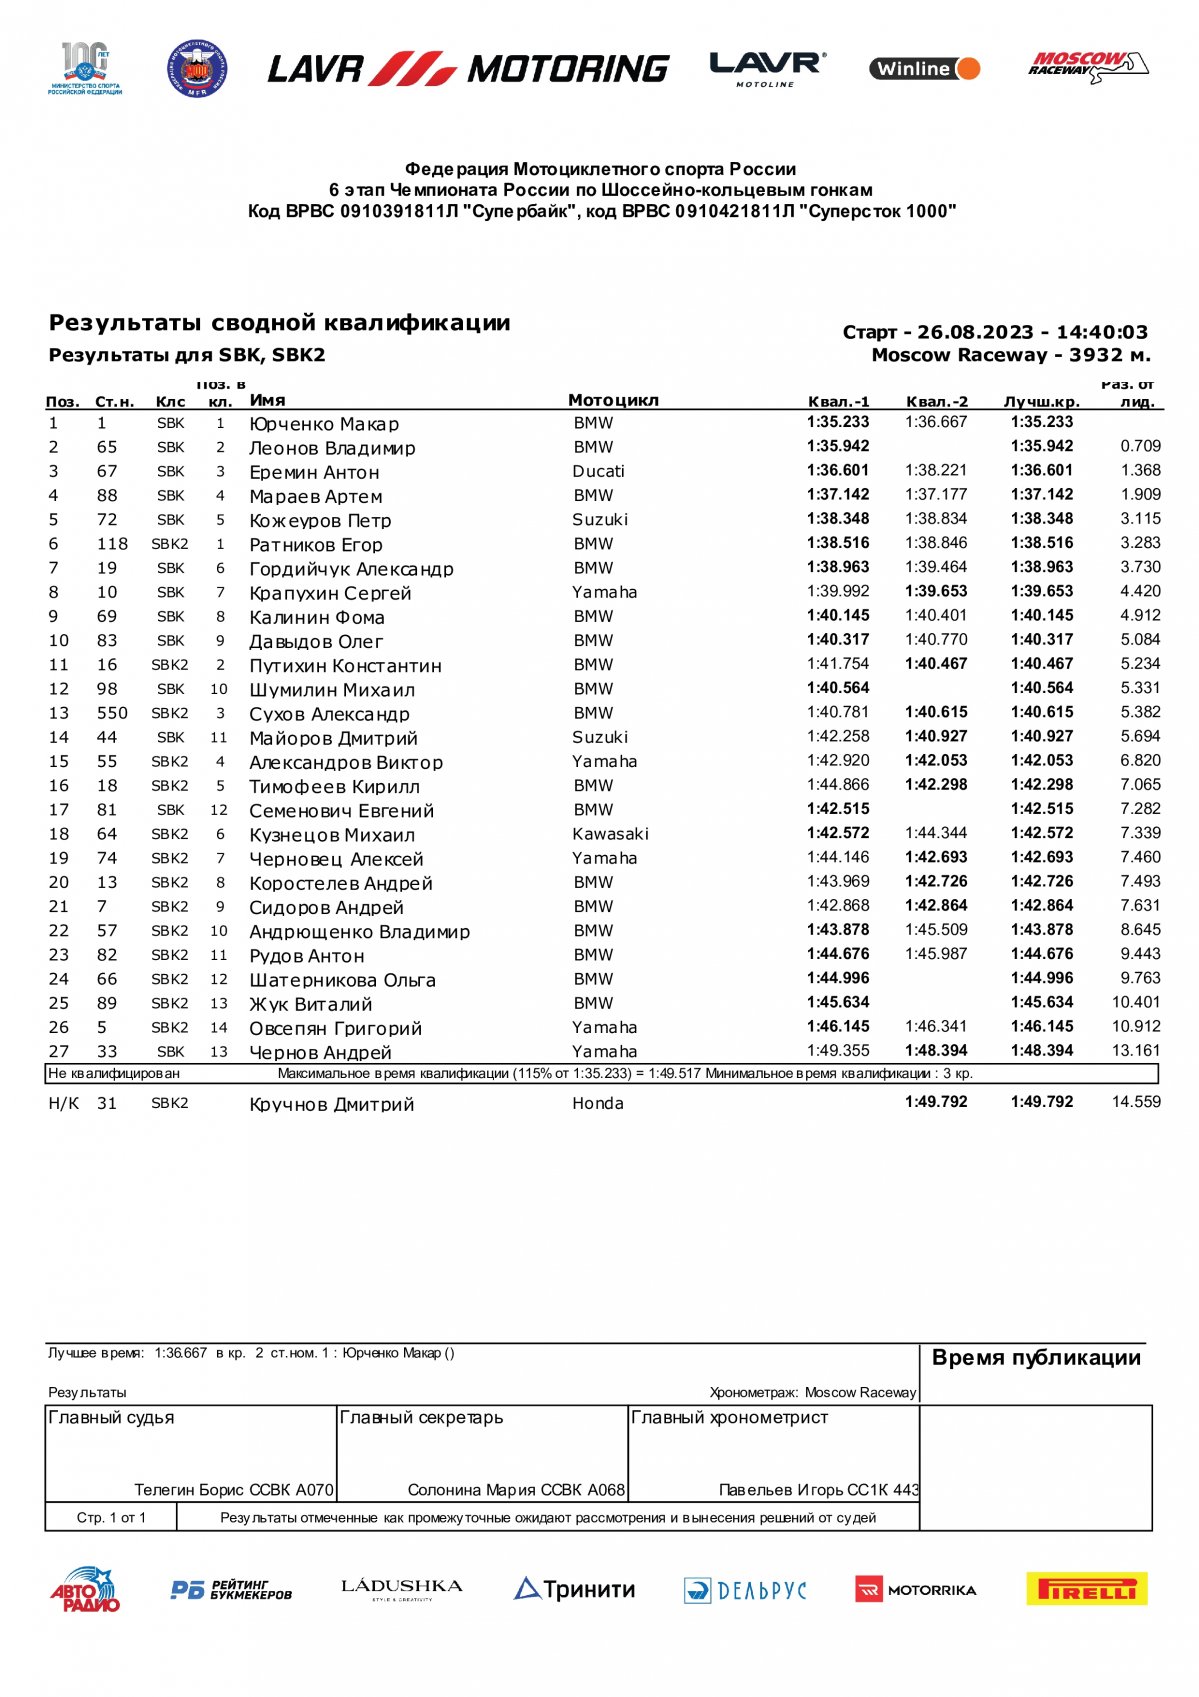 Результаты квалификации 6 этапа Чемпионата России Lavr Motoring - Superbike (27/08/2023)